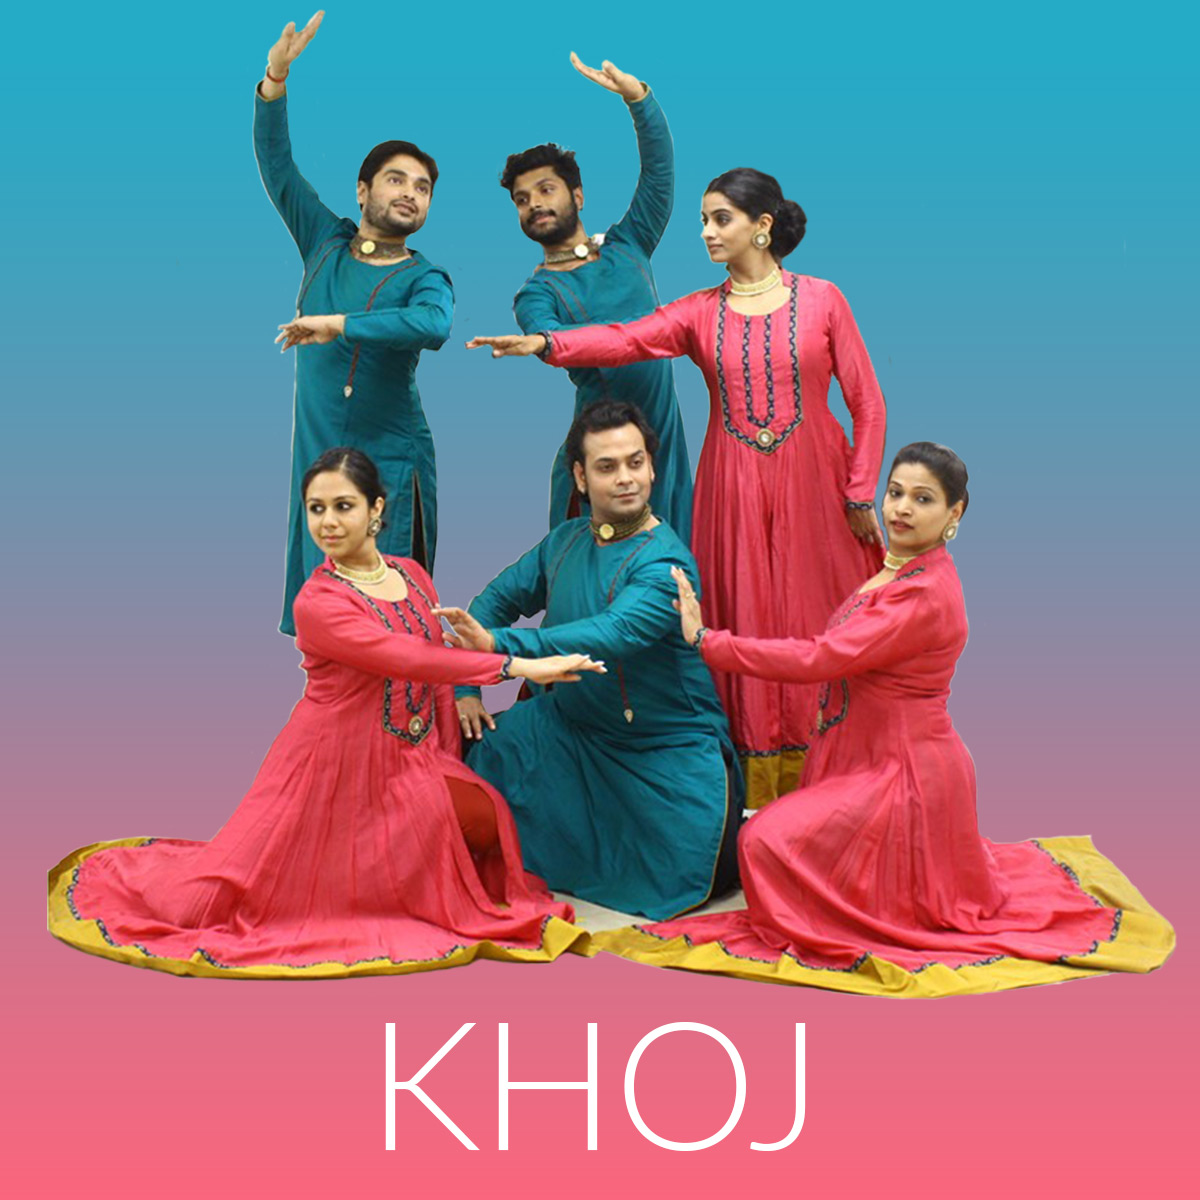 KHOJ: Une collaboration internationale de danse et de musique directe!